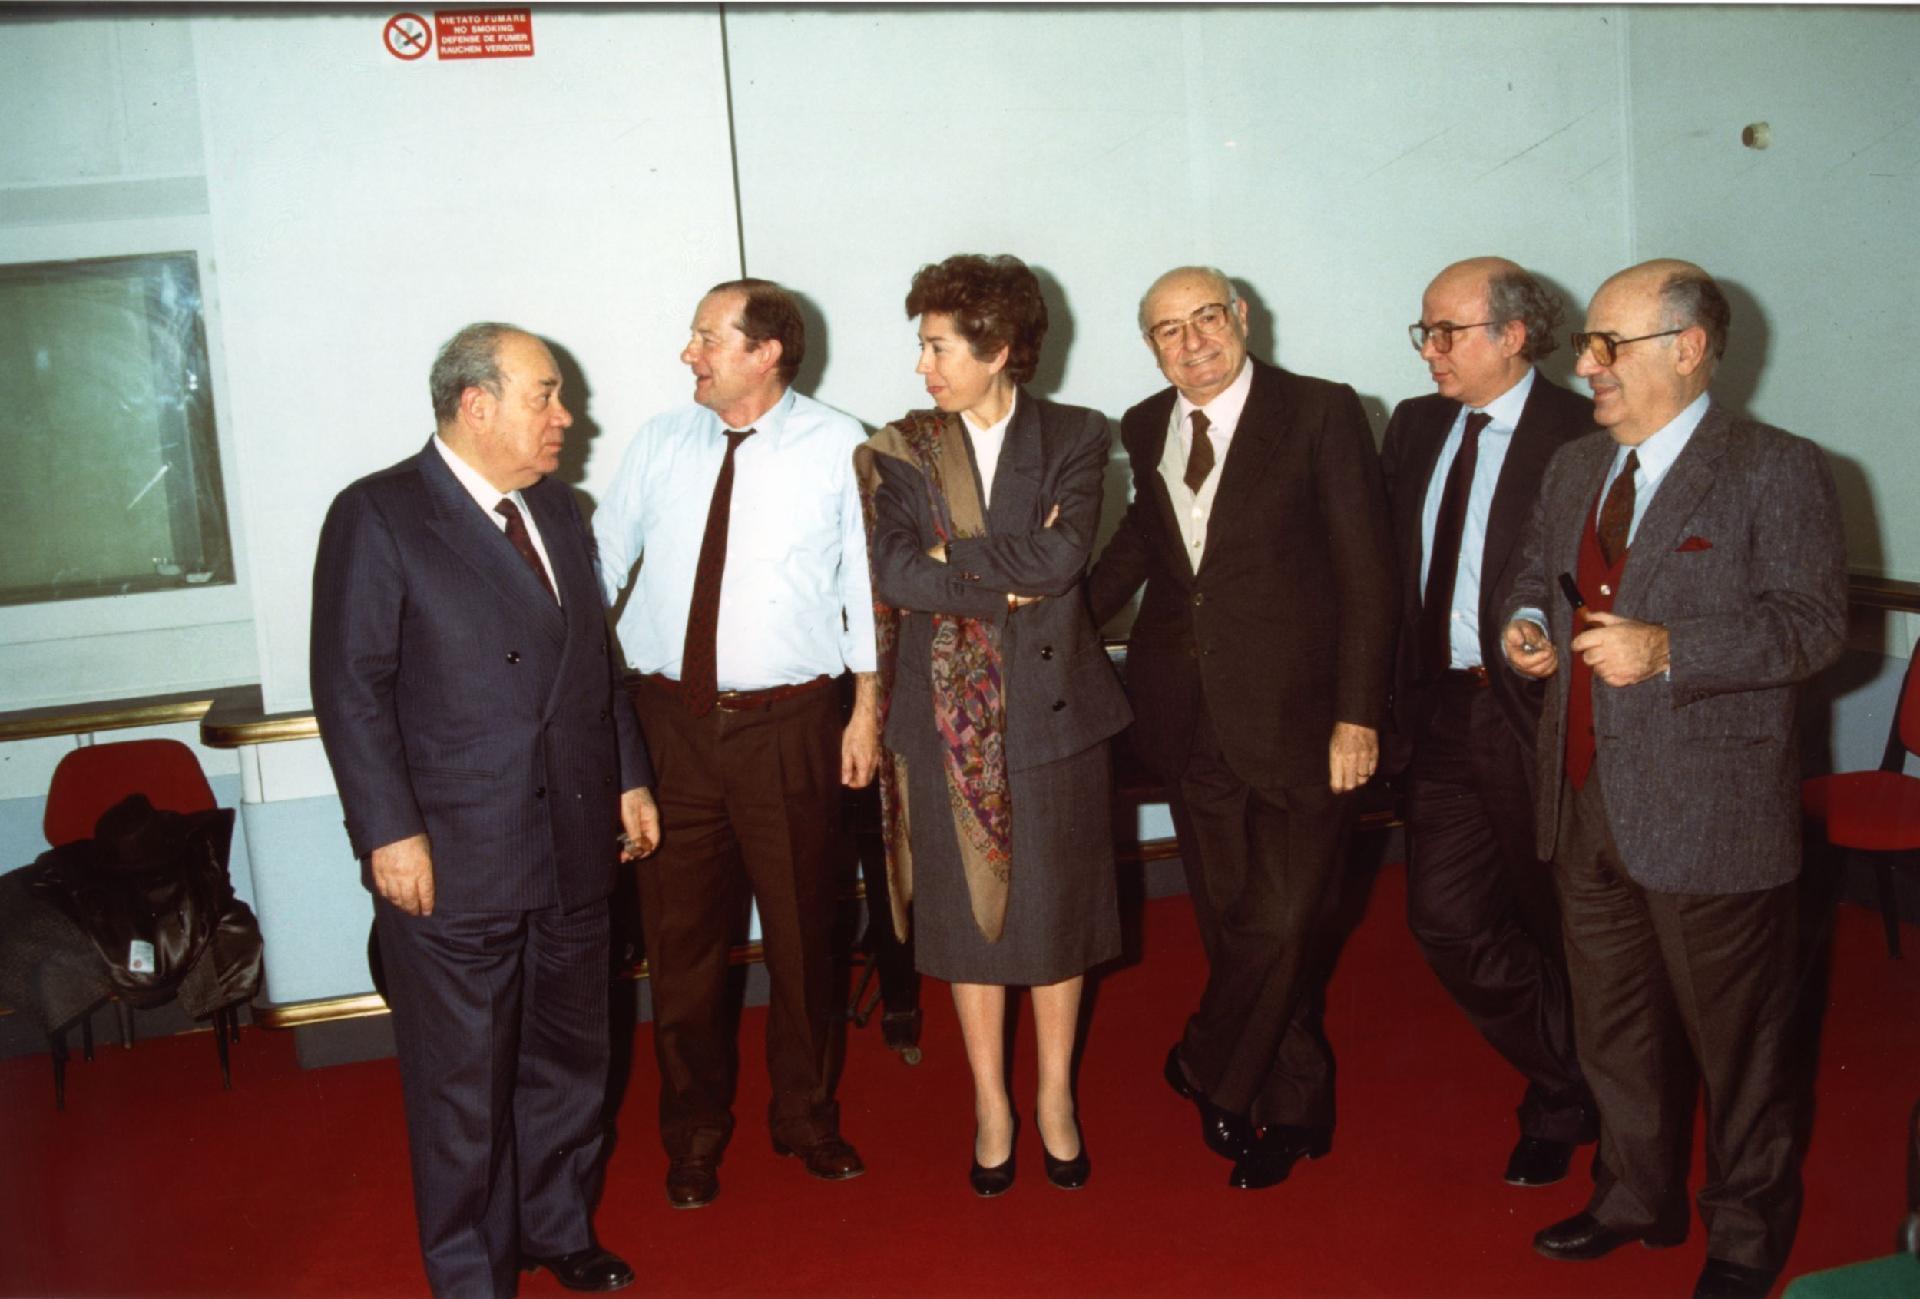 Gianni Bisiach con alcuni dirigenti della Democrazia cristiana a &quot;Radio anch&apos;io&quot; nello studio 8 di via Asiago n. 10 a Roma nel 1988